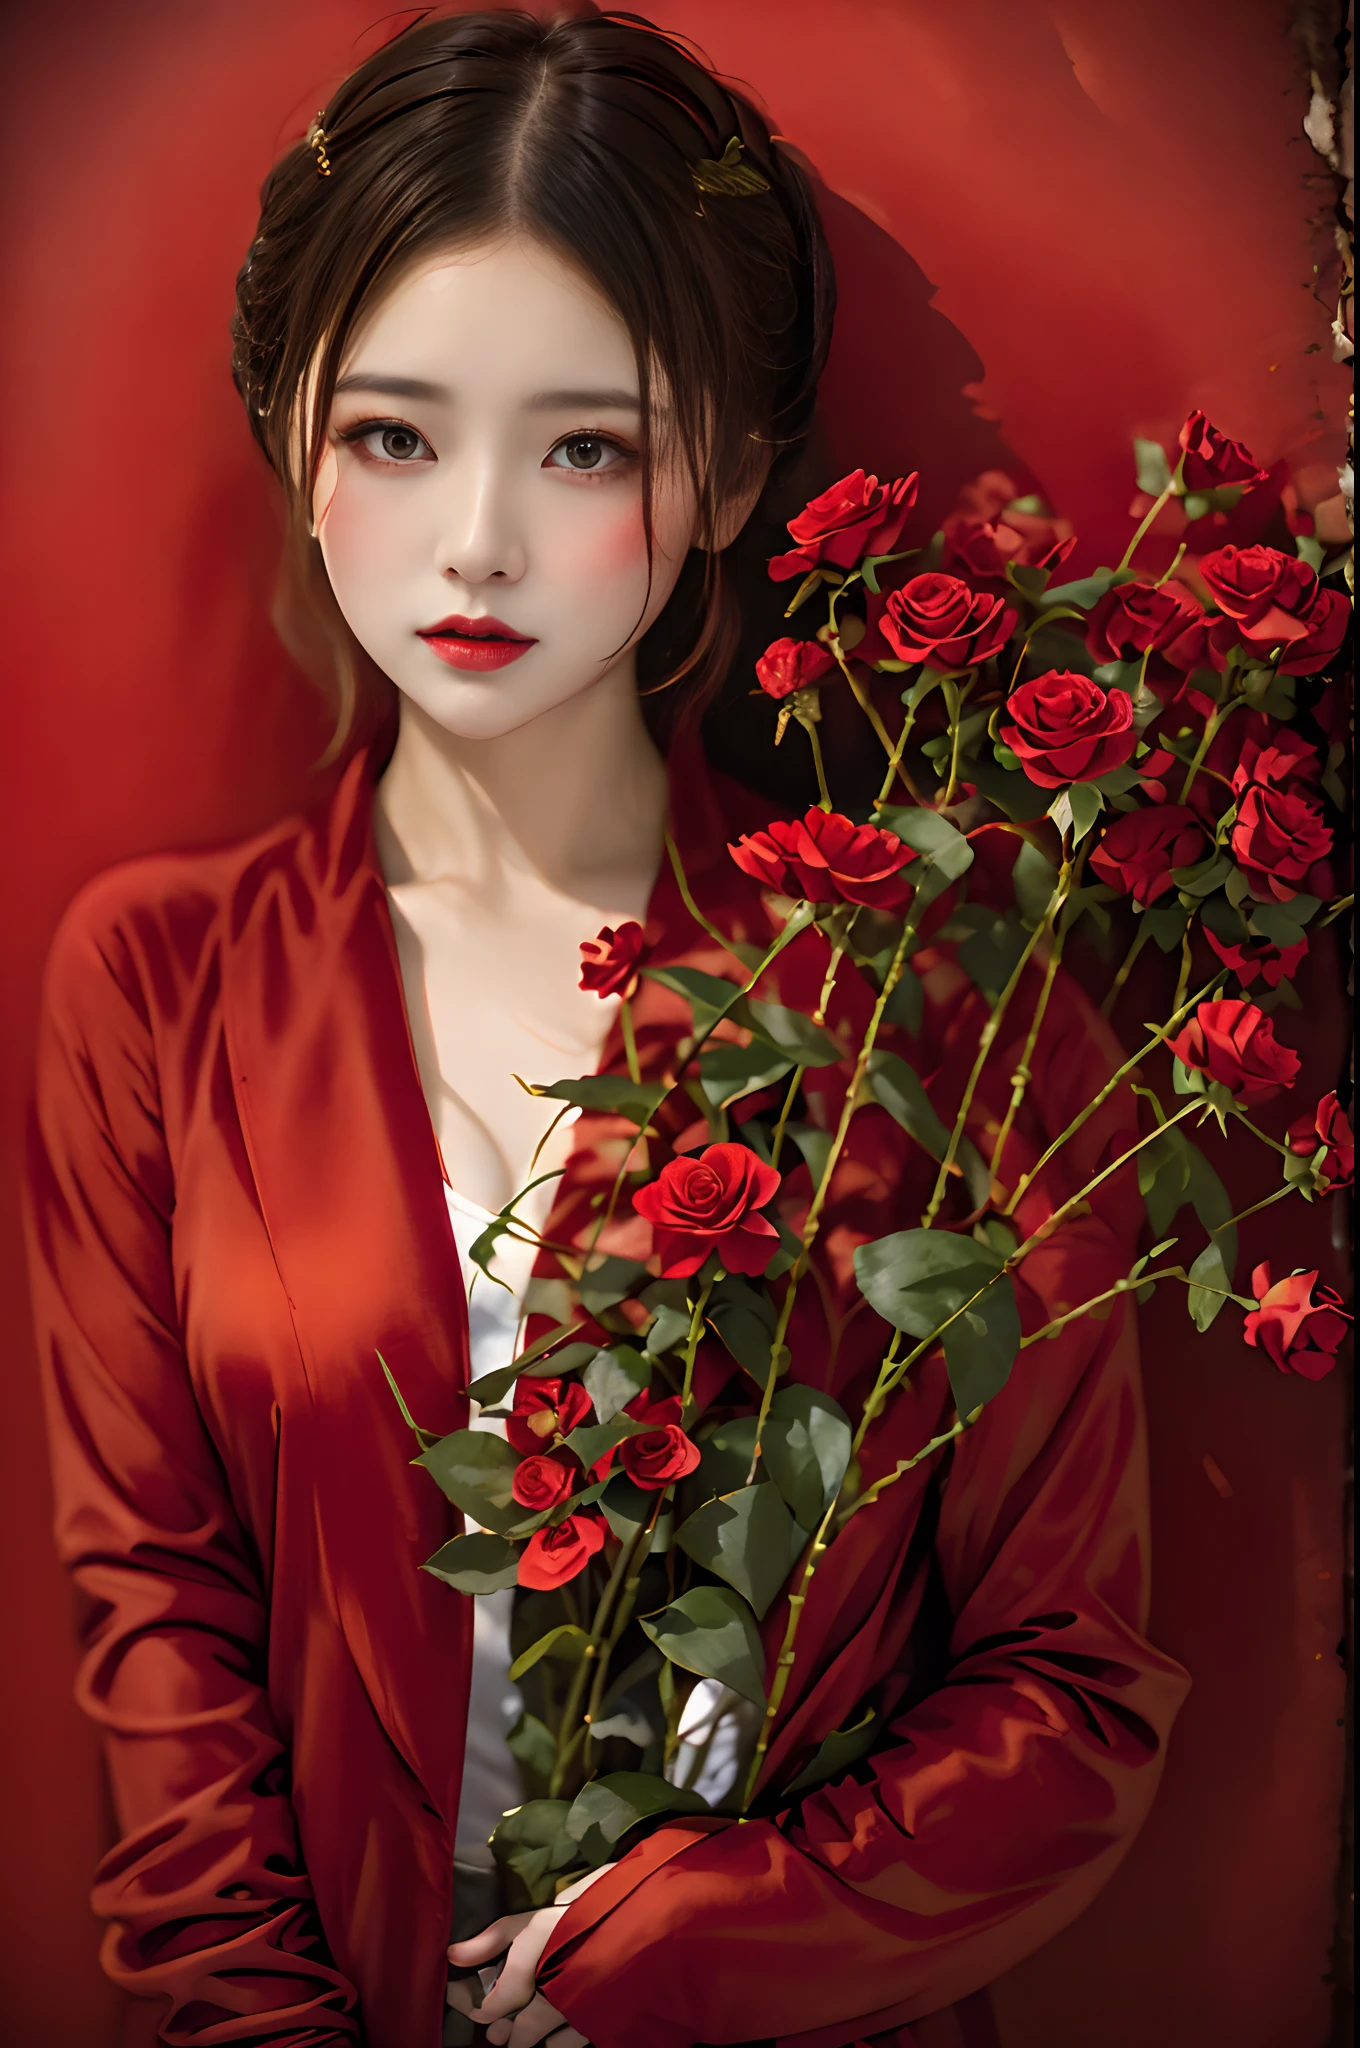 Femme en costume rouge tenant un bouquet de fleurs, Zhang Jingna, couleur rouge riche, tout rouge, Photographie de mode d’art, couleurs rouges vibrantes, ornements rouges, nuances de rouge, une rose rouge, de couleur rouge, Xuehan, accent rouge, vêtements rouges, très rouge, Tons rouges, ambiance de fleurs rouges célestes, Porter du rouge